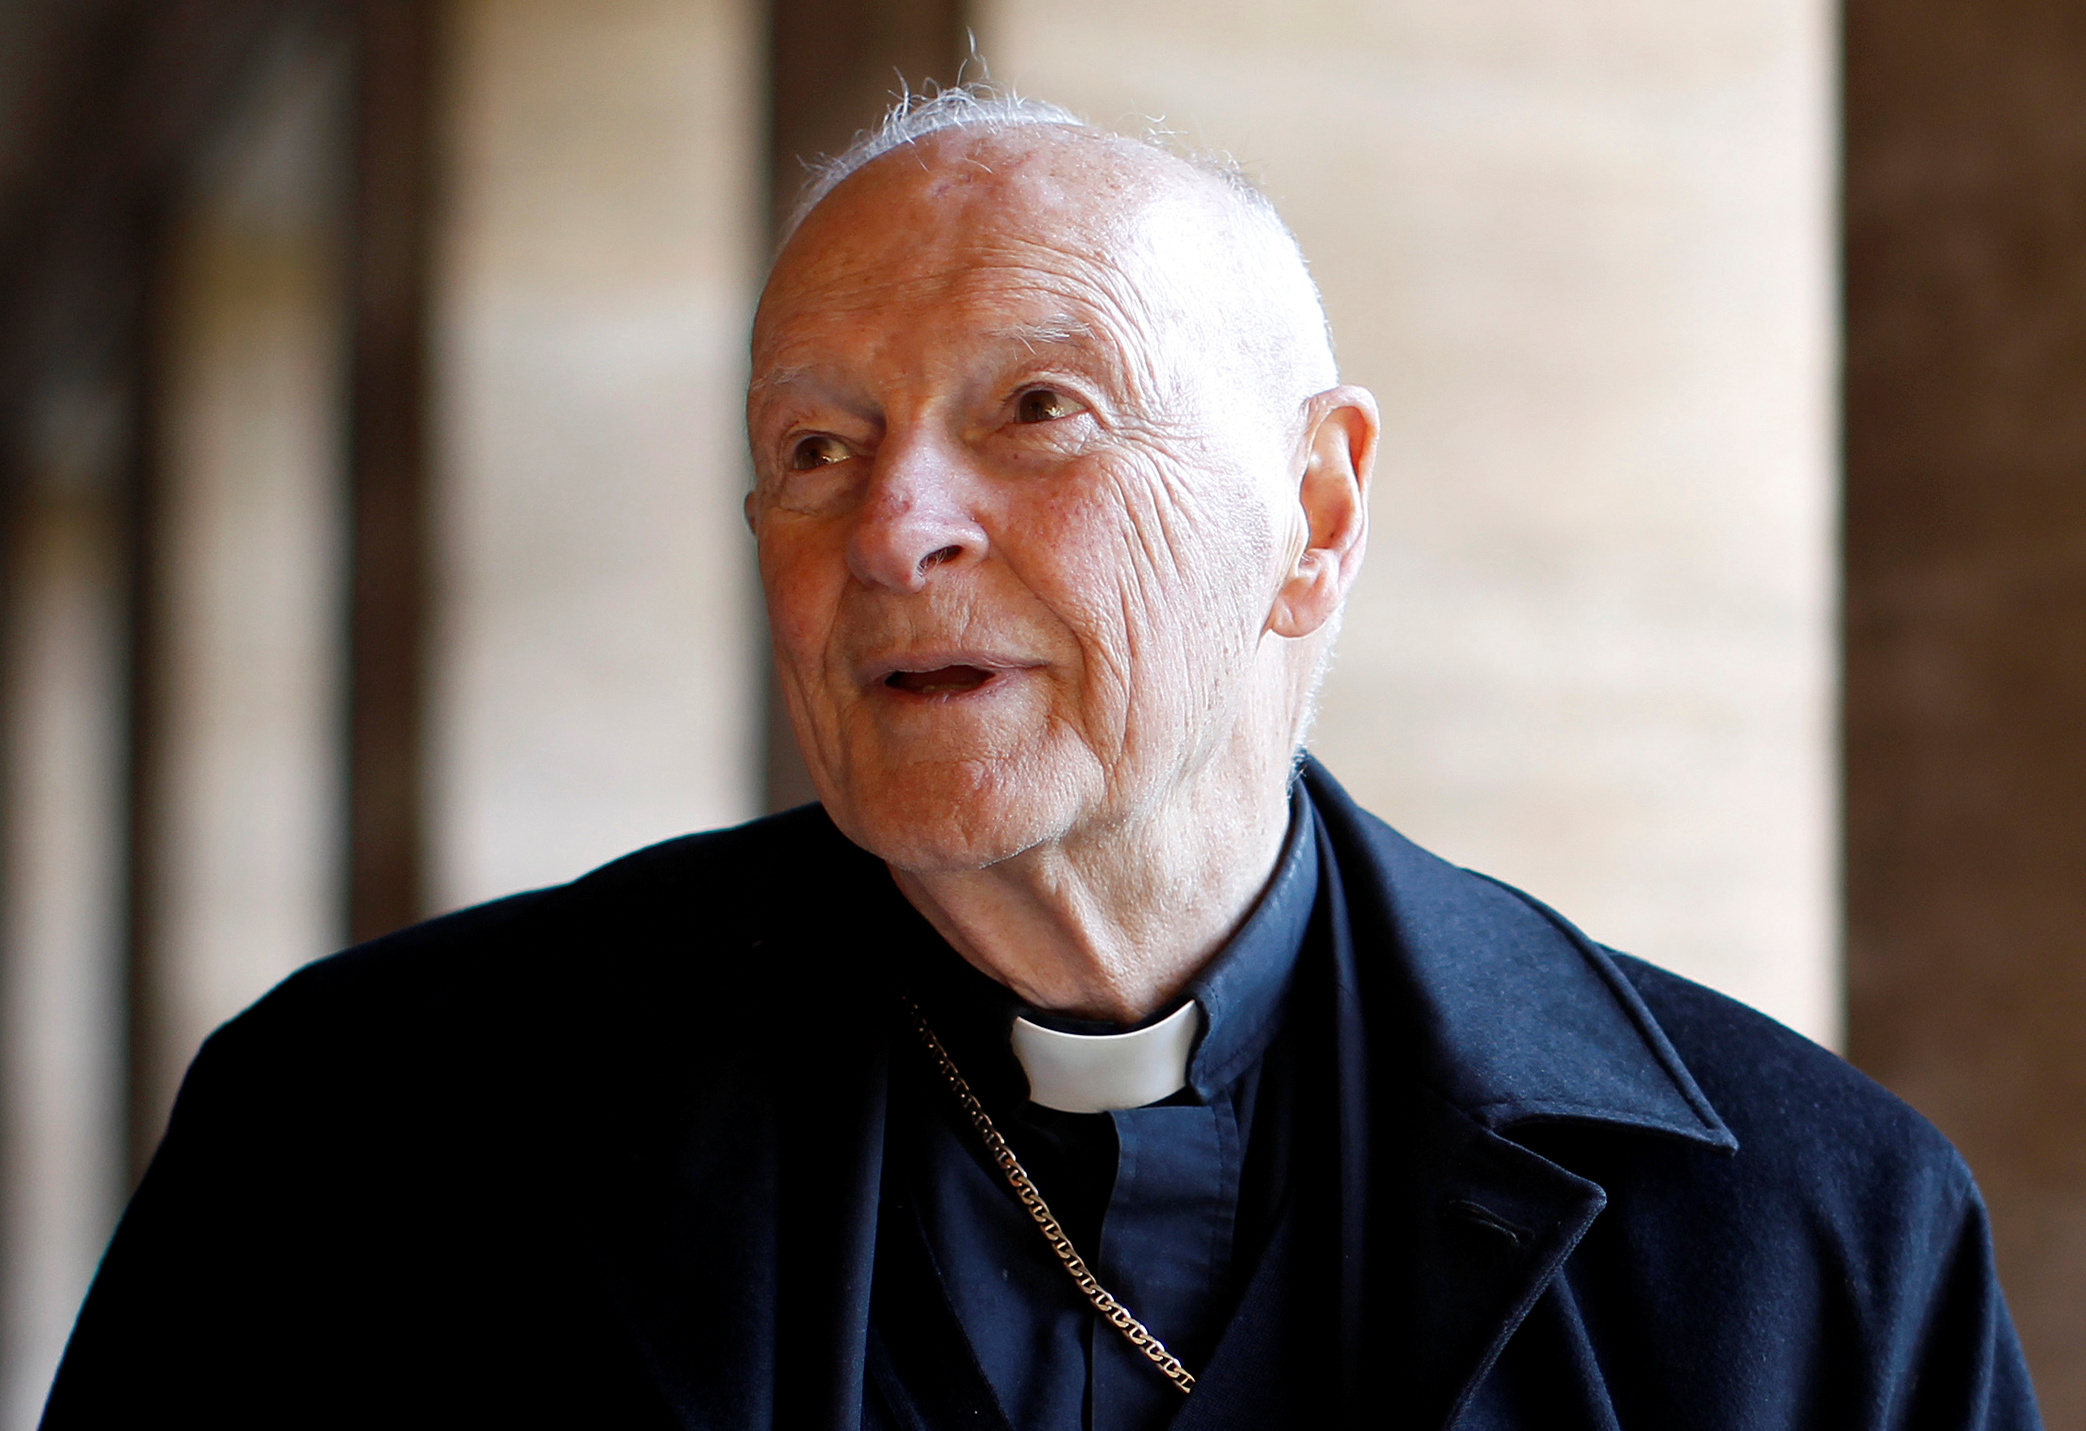 Vaticano expulsa de sacerdocio a excardenal McCarrick tras acusaciones abusos